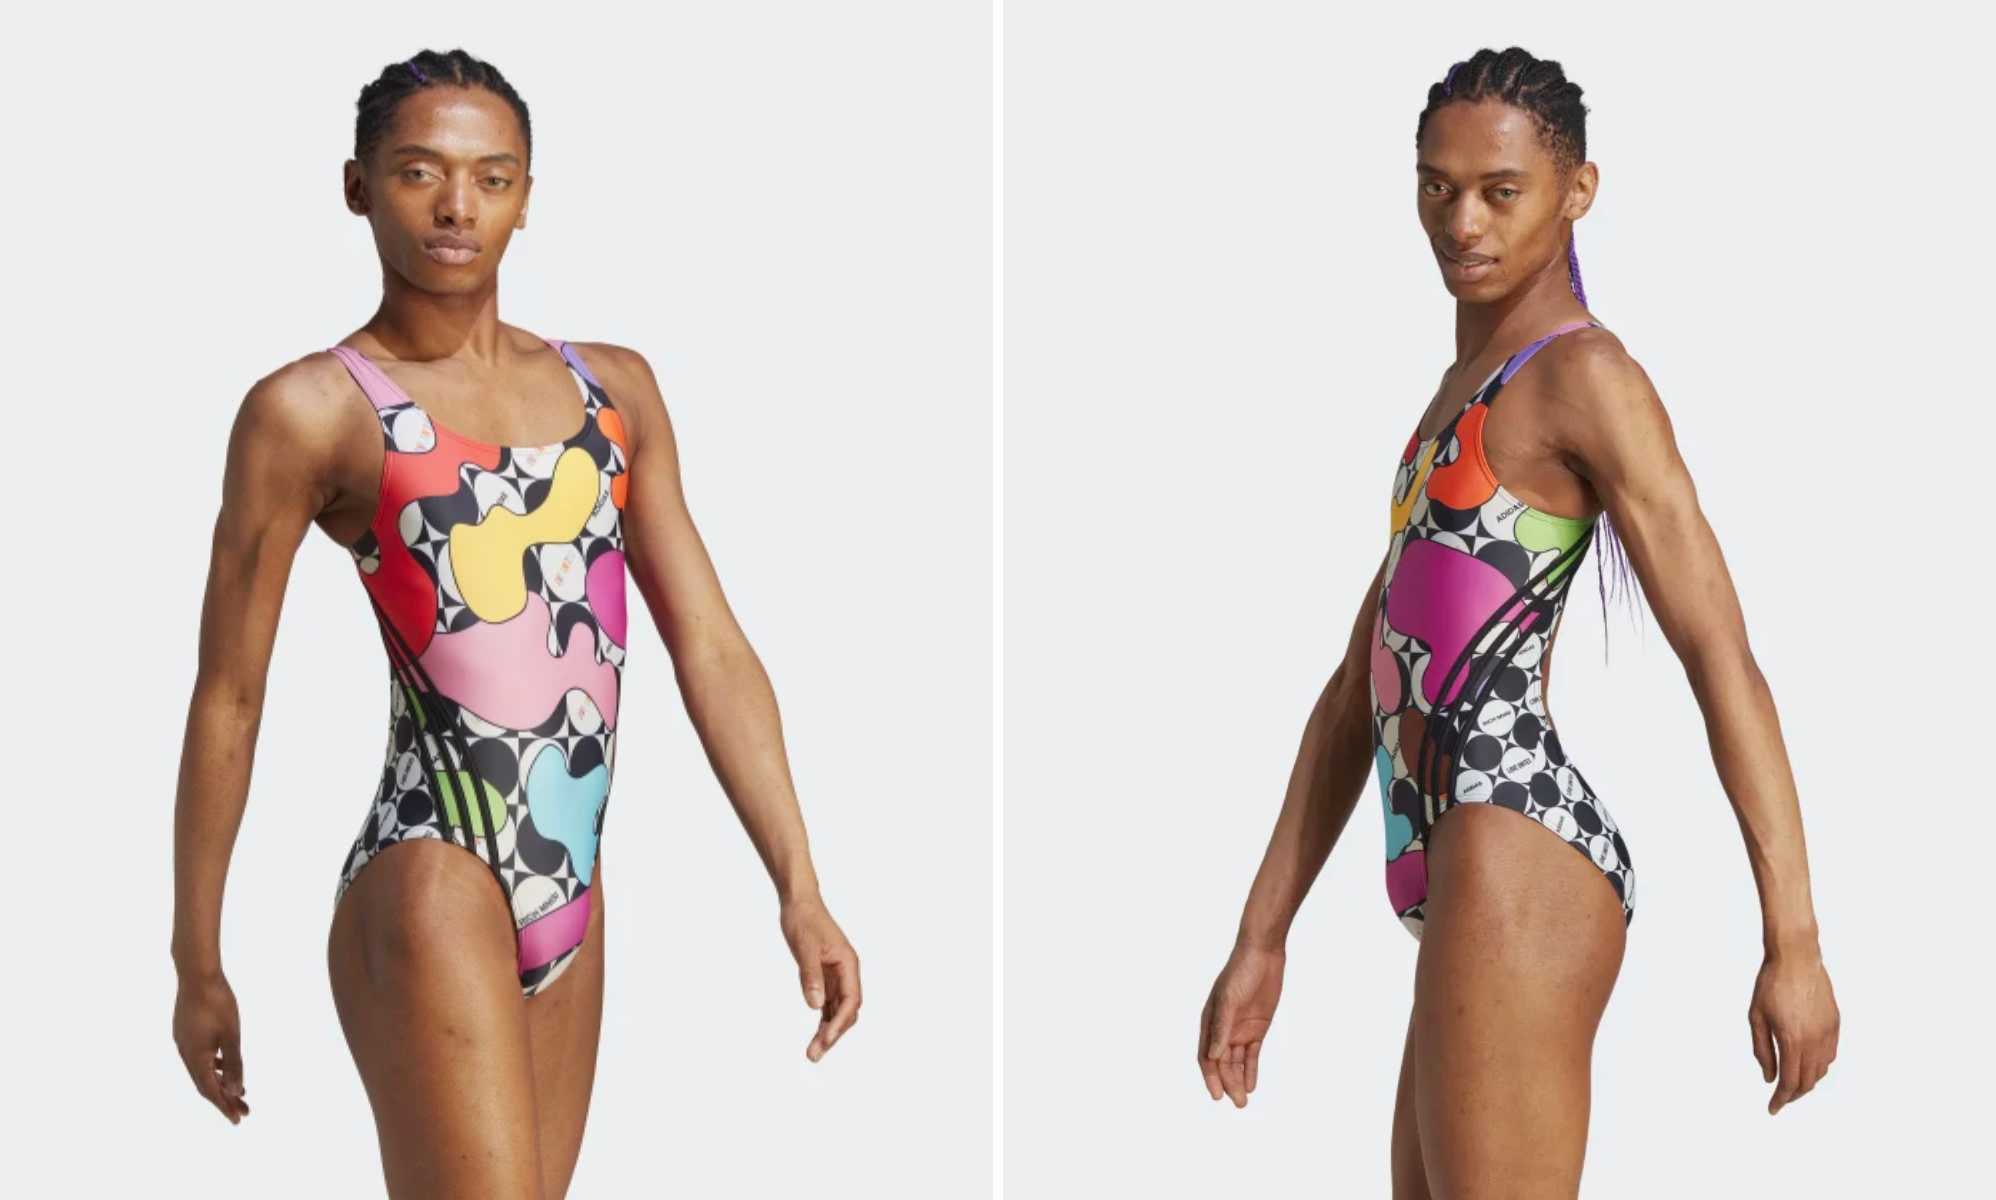 optillen grijs Aanhankelijk Adidas hit with anti-trans backlash over Pride swimsuit